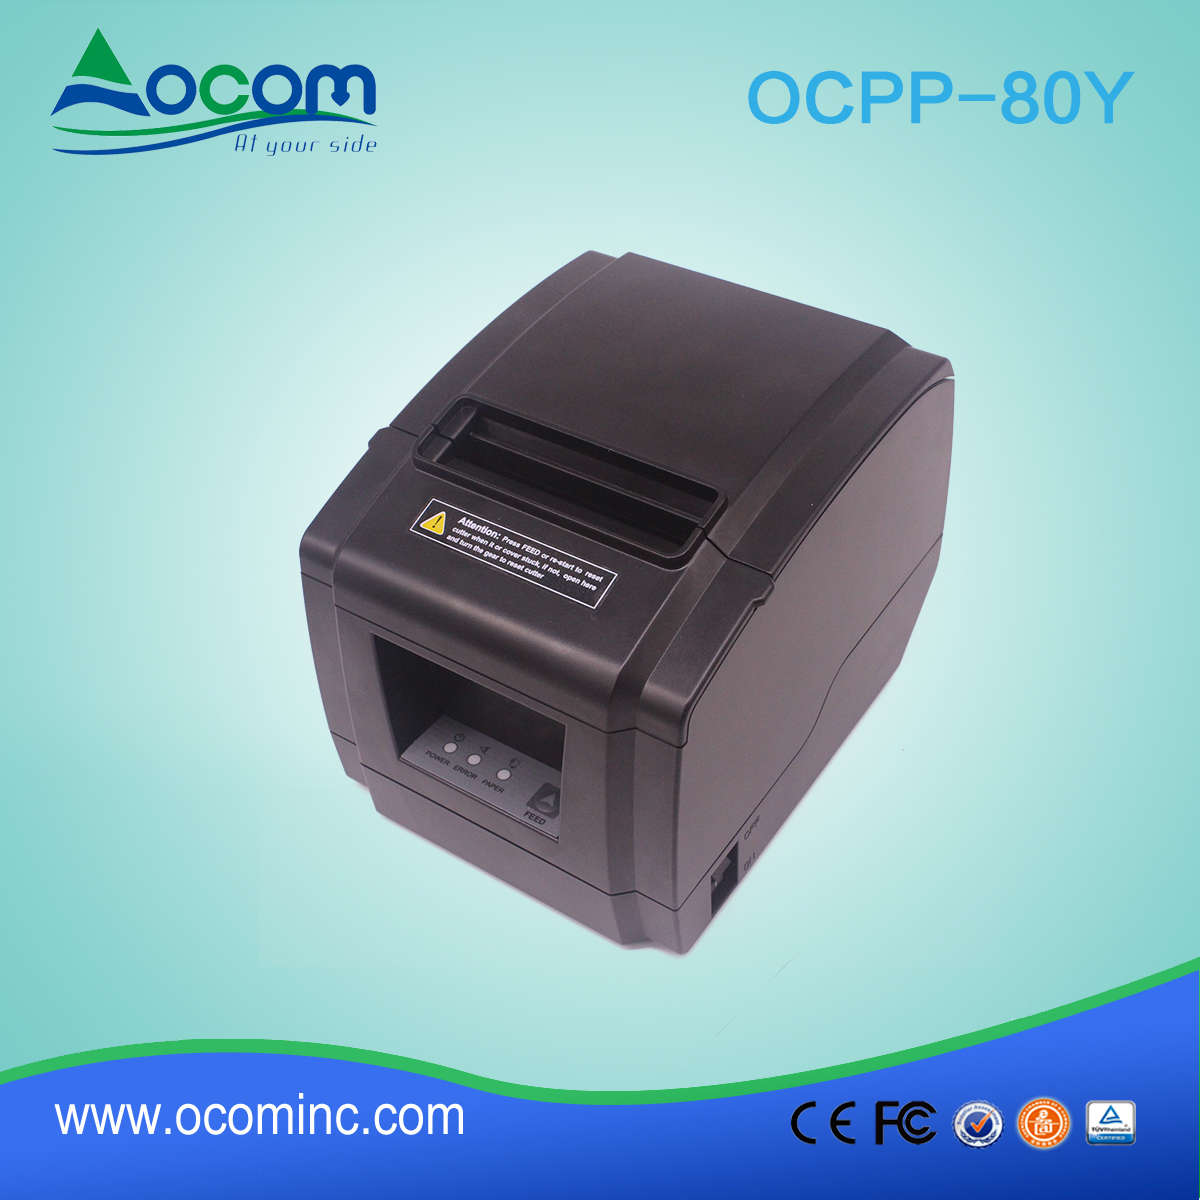 OCPP-80Y-U Новая модель 80-миллиметрового термоприемного принтера с USB-портом Auto Cutter